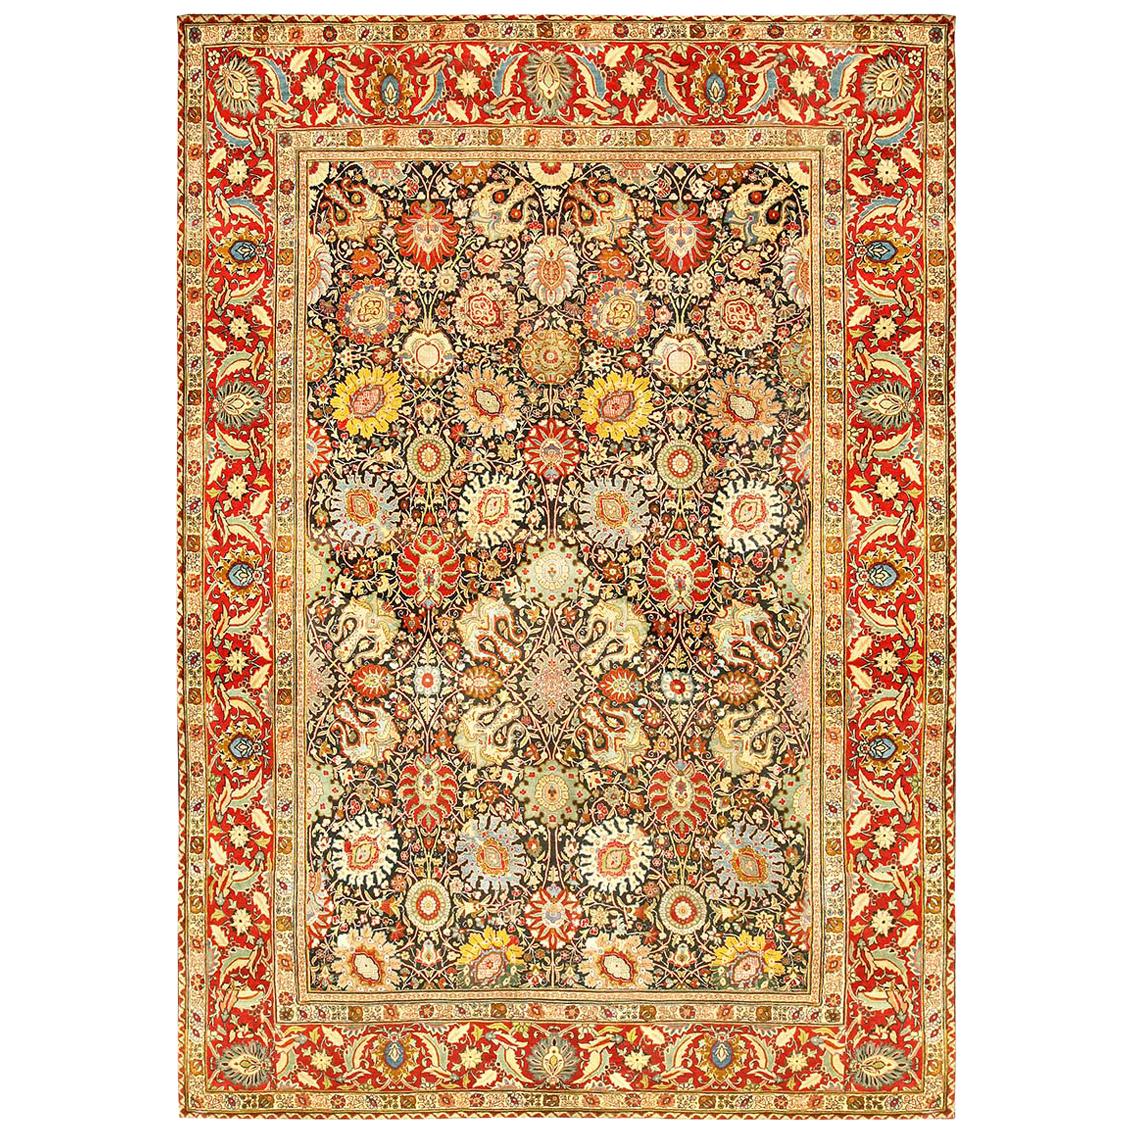 Antique Persian Tabriz Floral Rug Size Adjusted For Sale